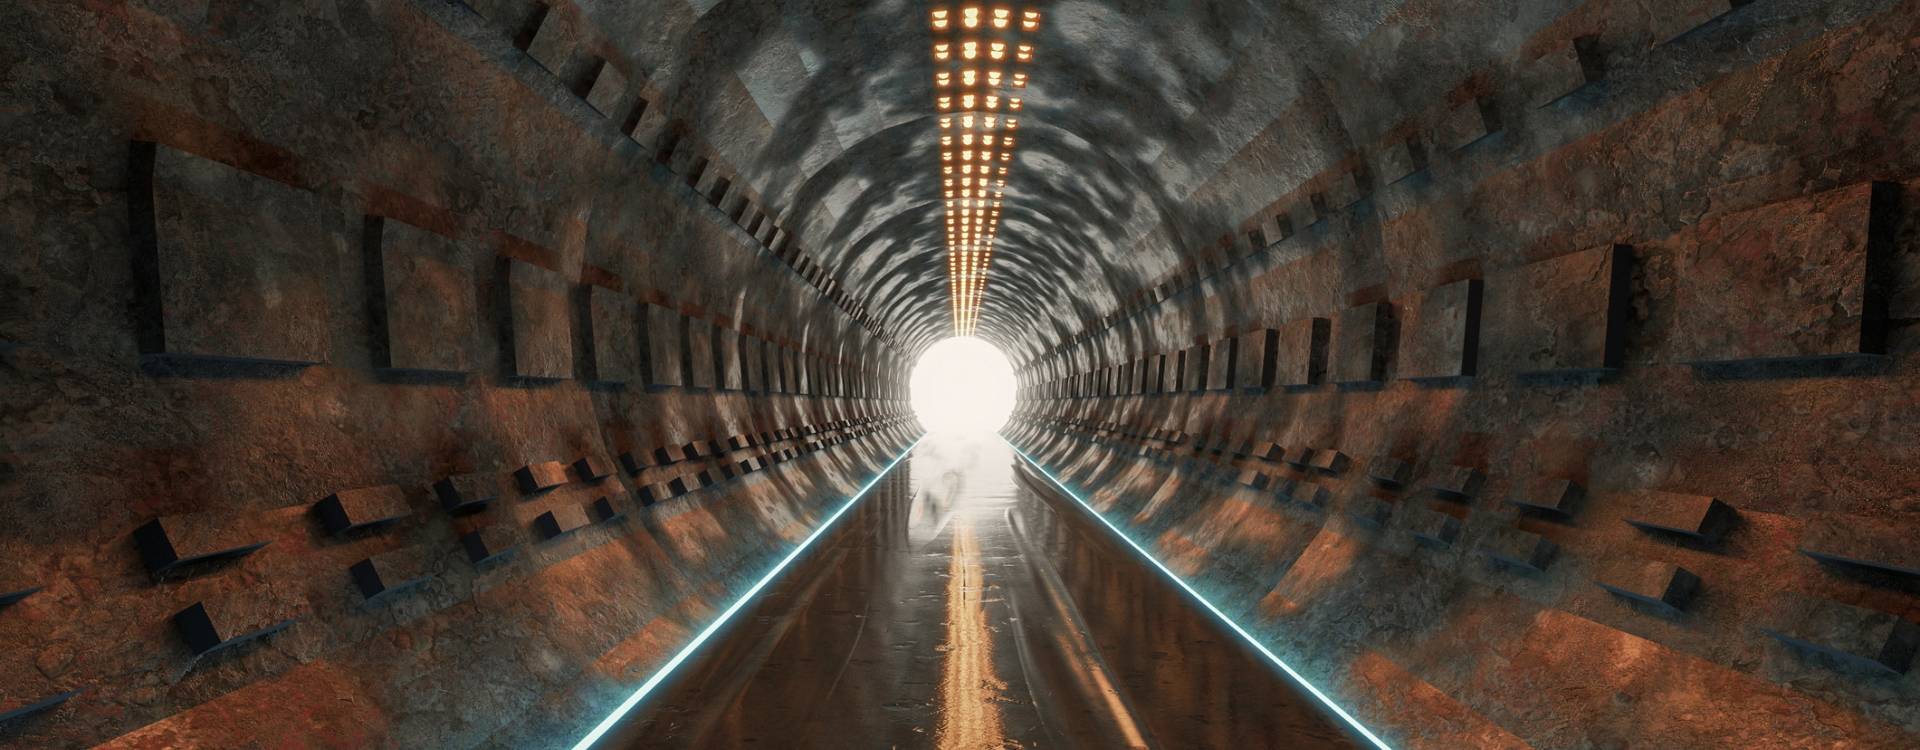 Slide A - 1 - Tunel